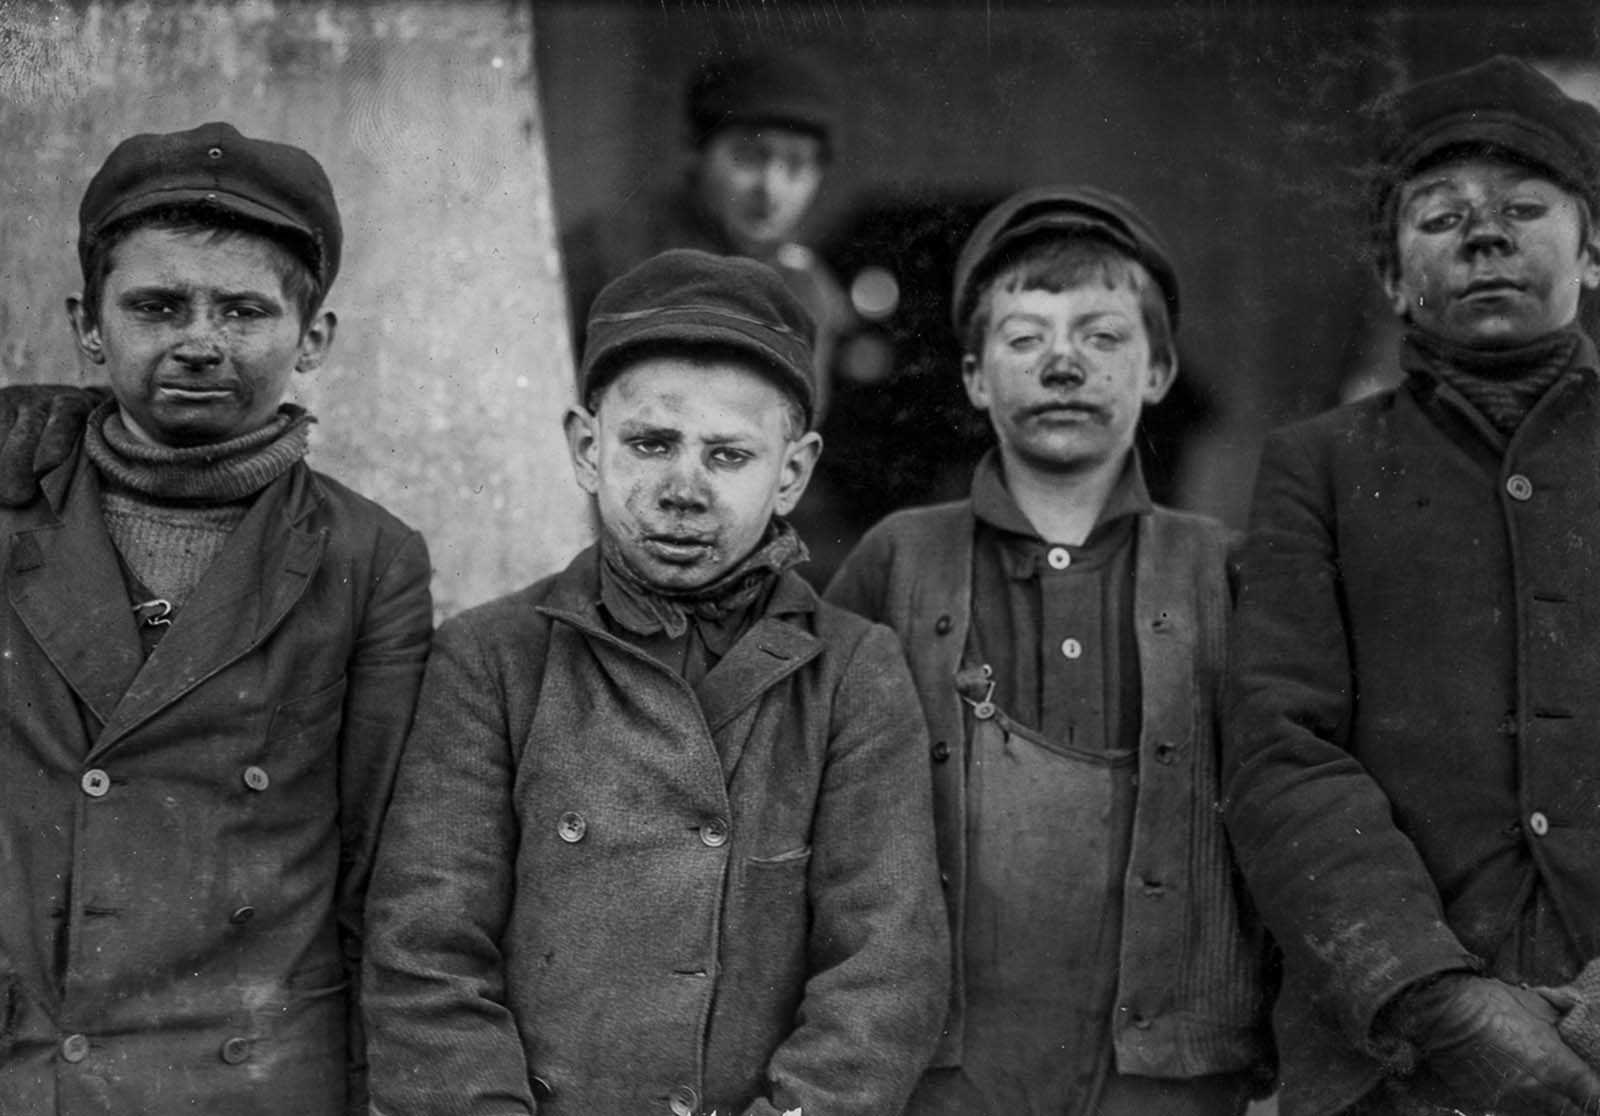 Breaker boys employed by the Pennsylvania Coal Company, 1911